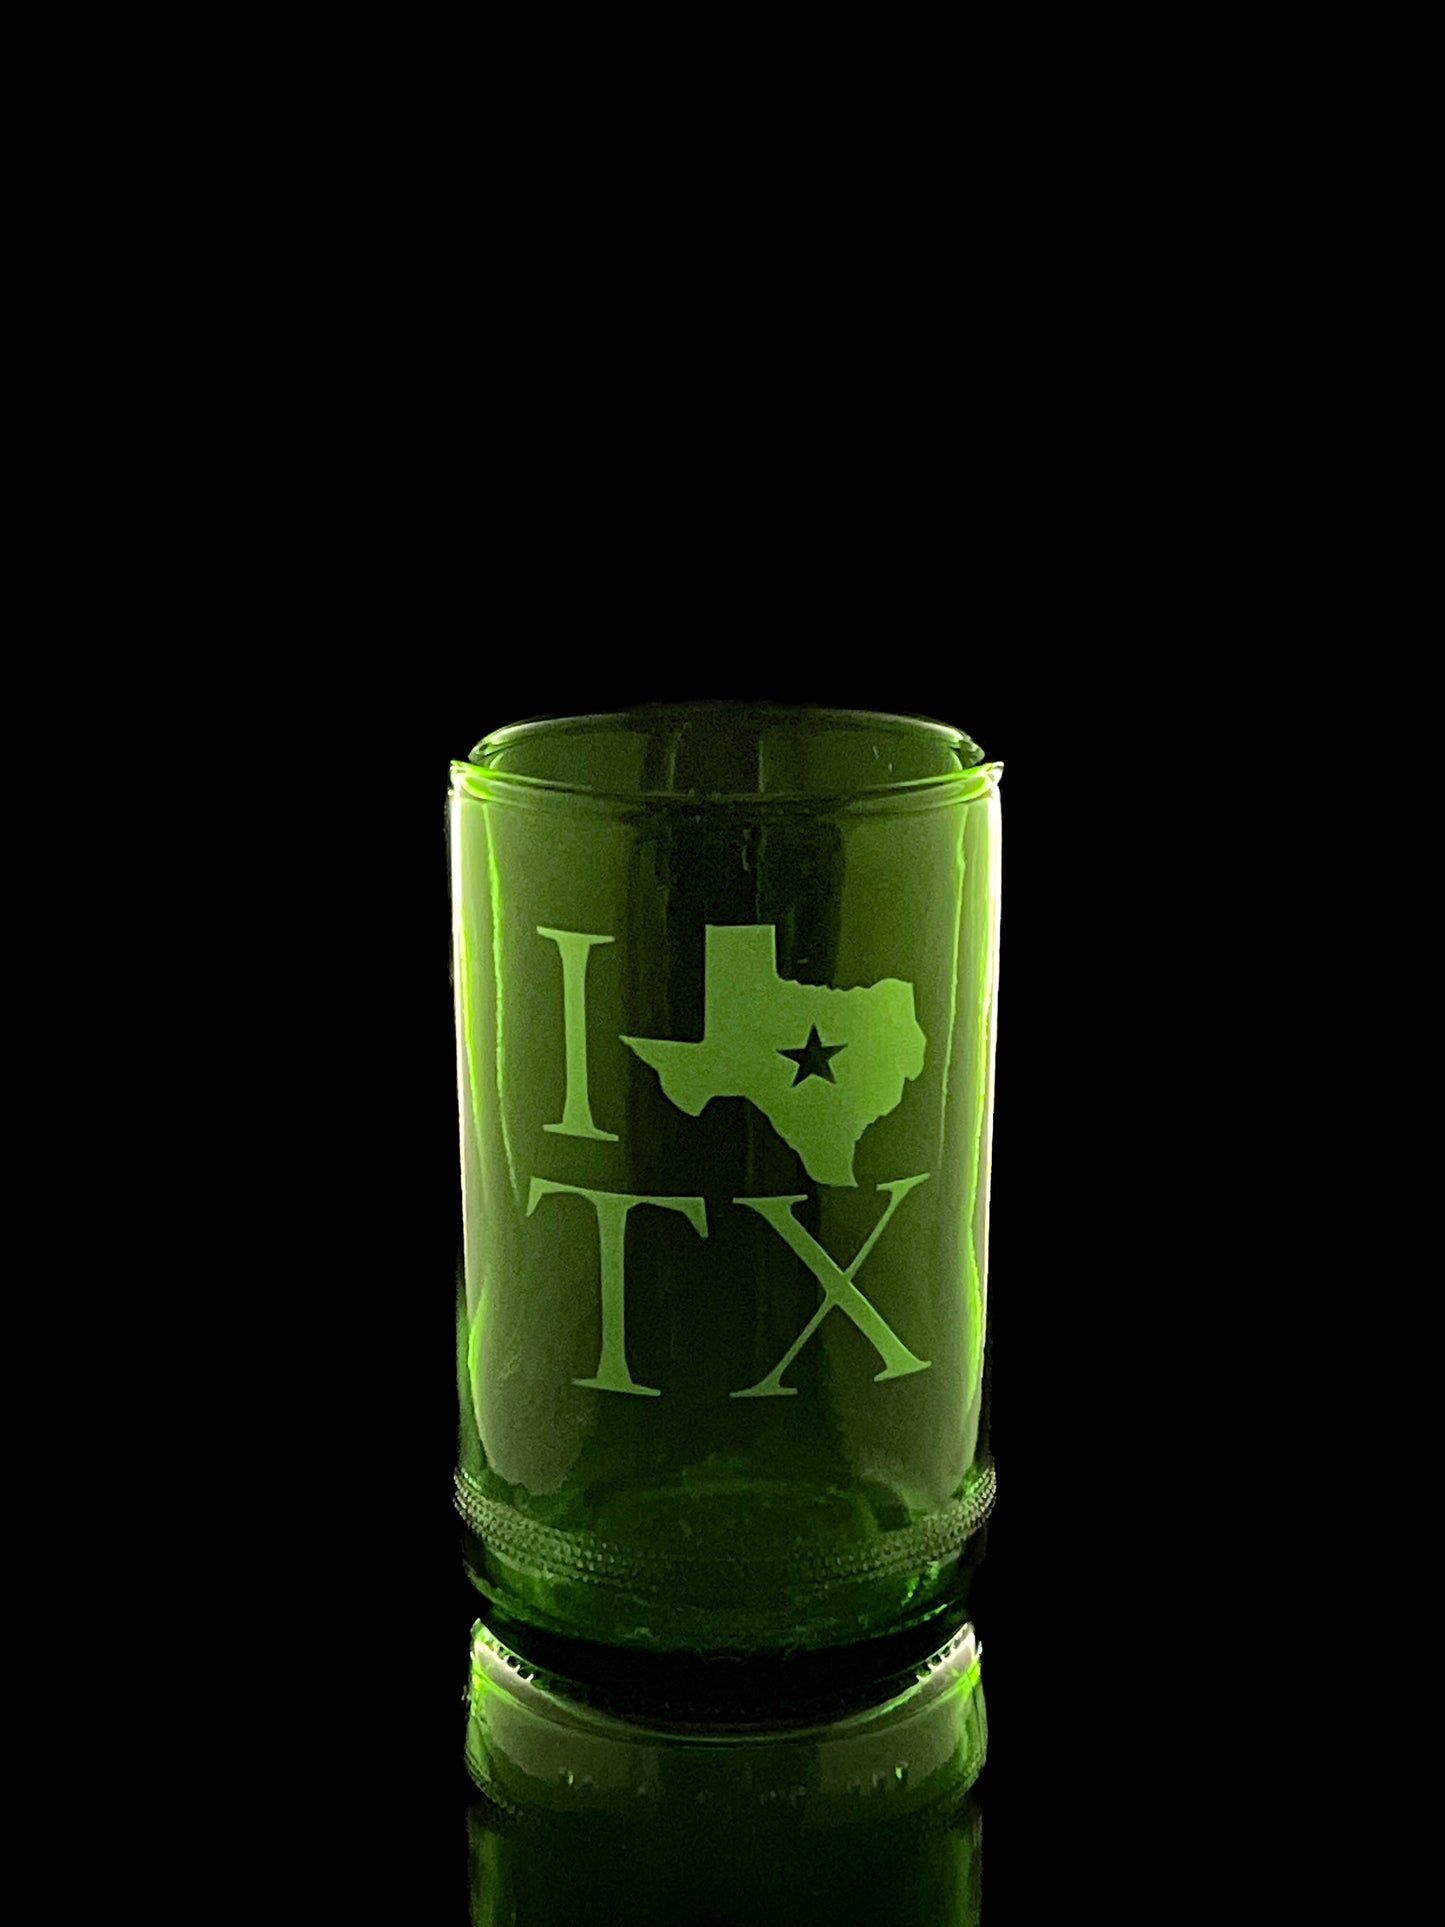 I Love Texas Wine Bottle Drinking Glasses - Set of 2